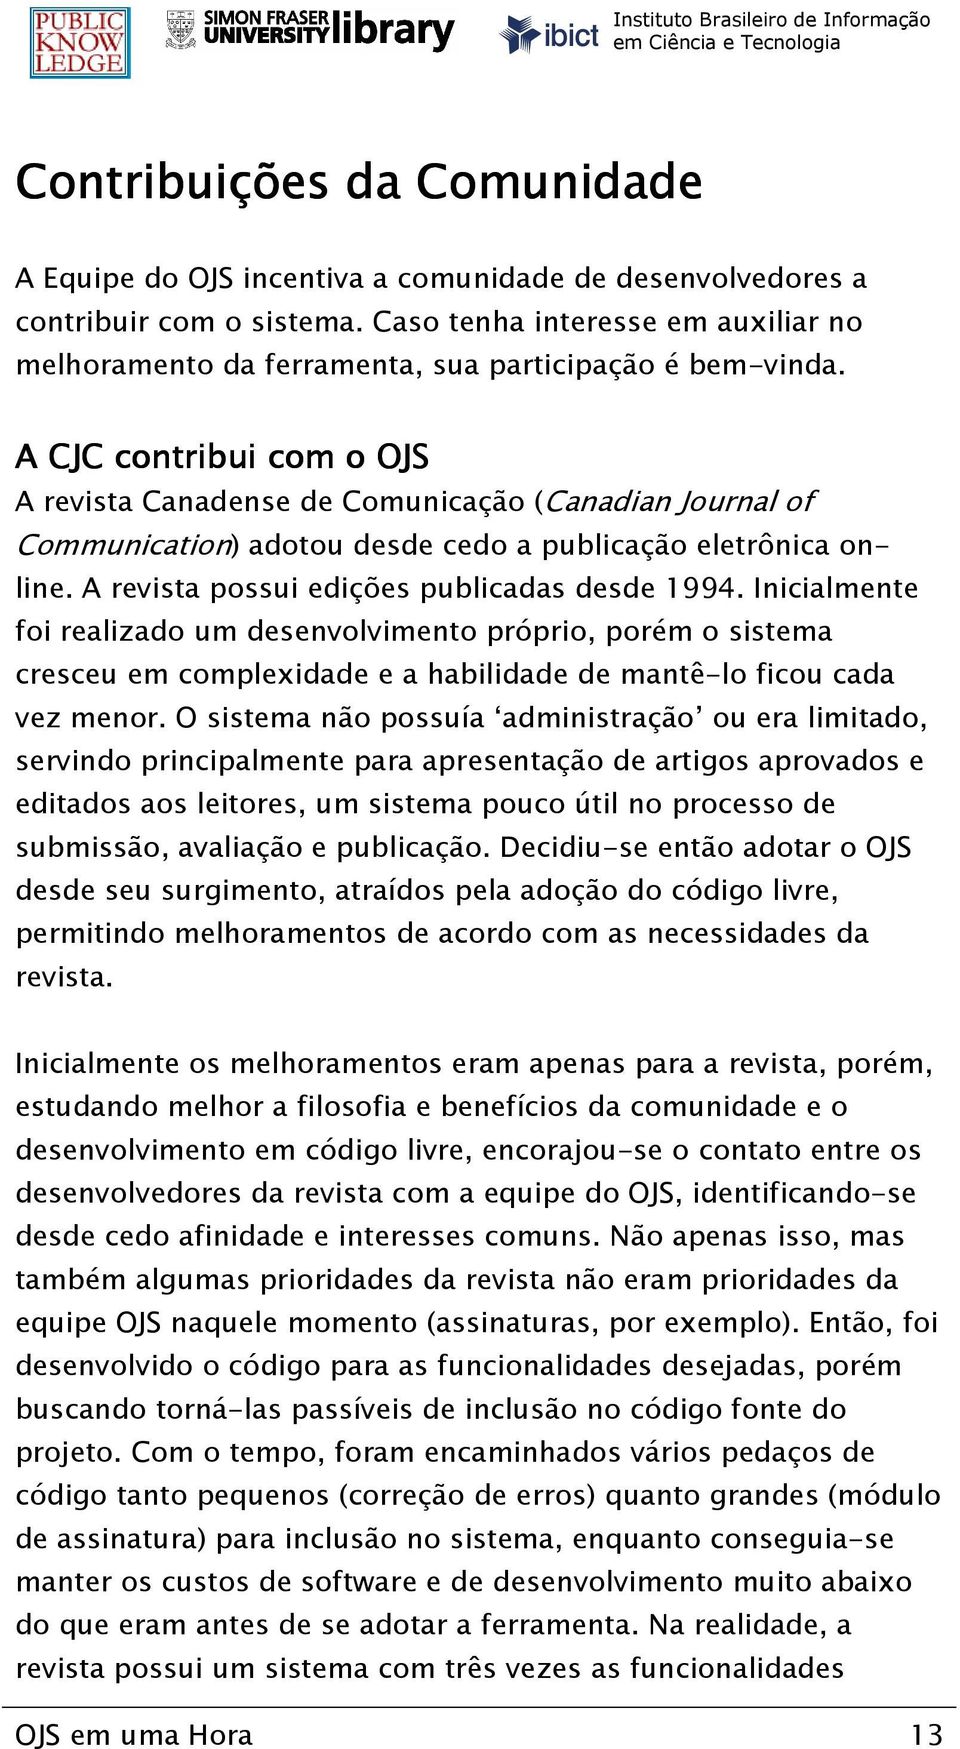 A CJC contribui com o OJS A revista Canadense de Comunicação (Canadian Journal of Communication) adotou desde cedo a publicação eletrônica online. A revista possui edições publicadas desde 1994.